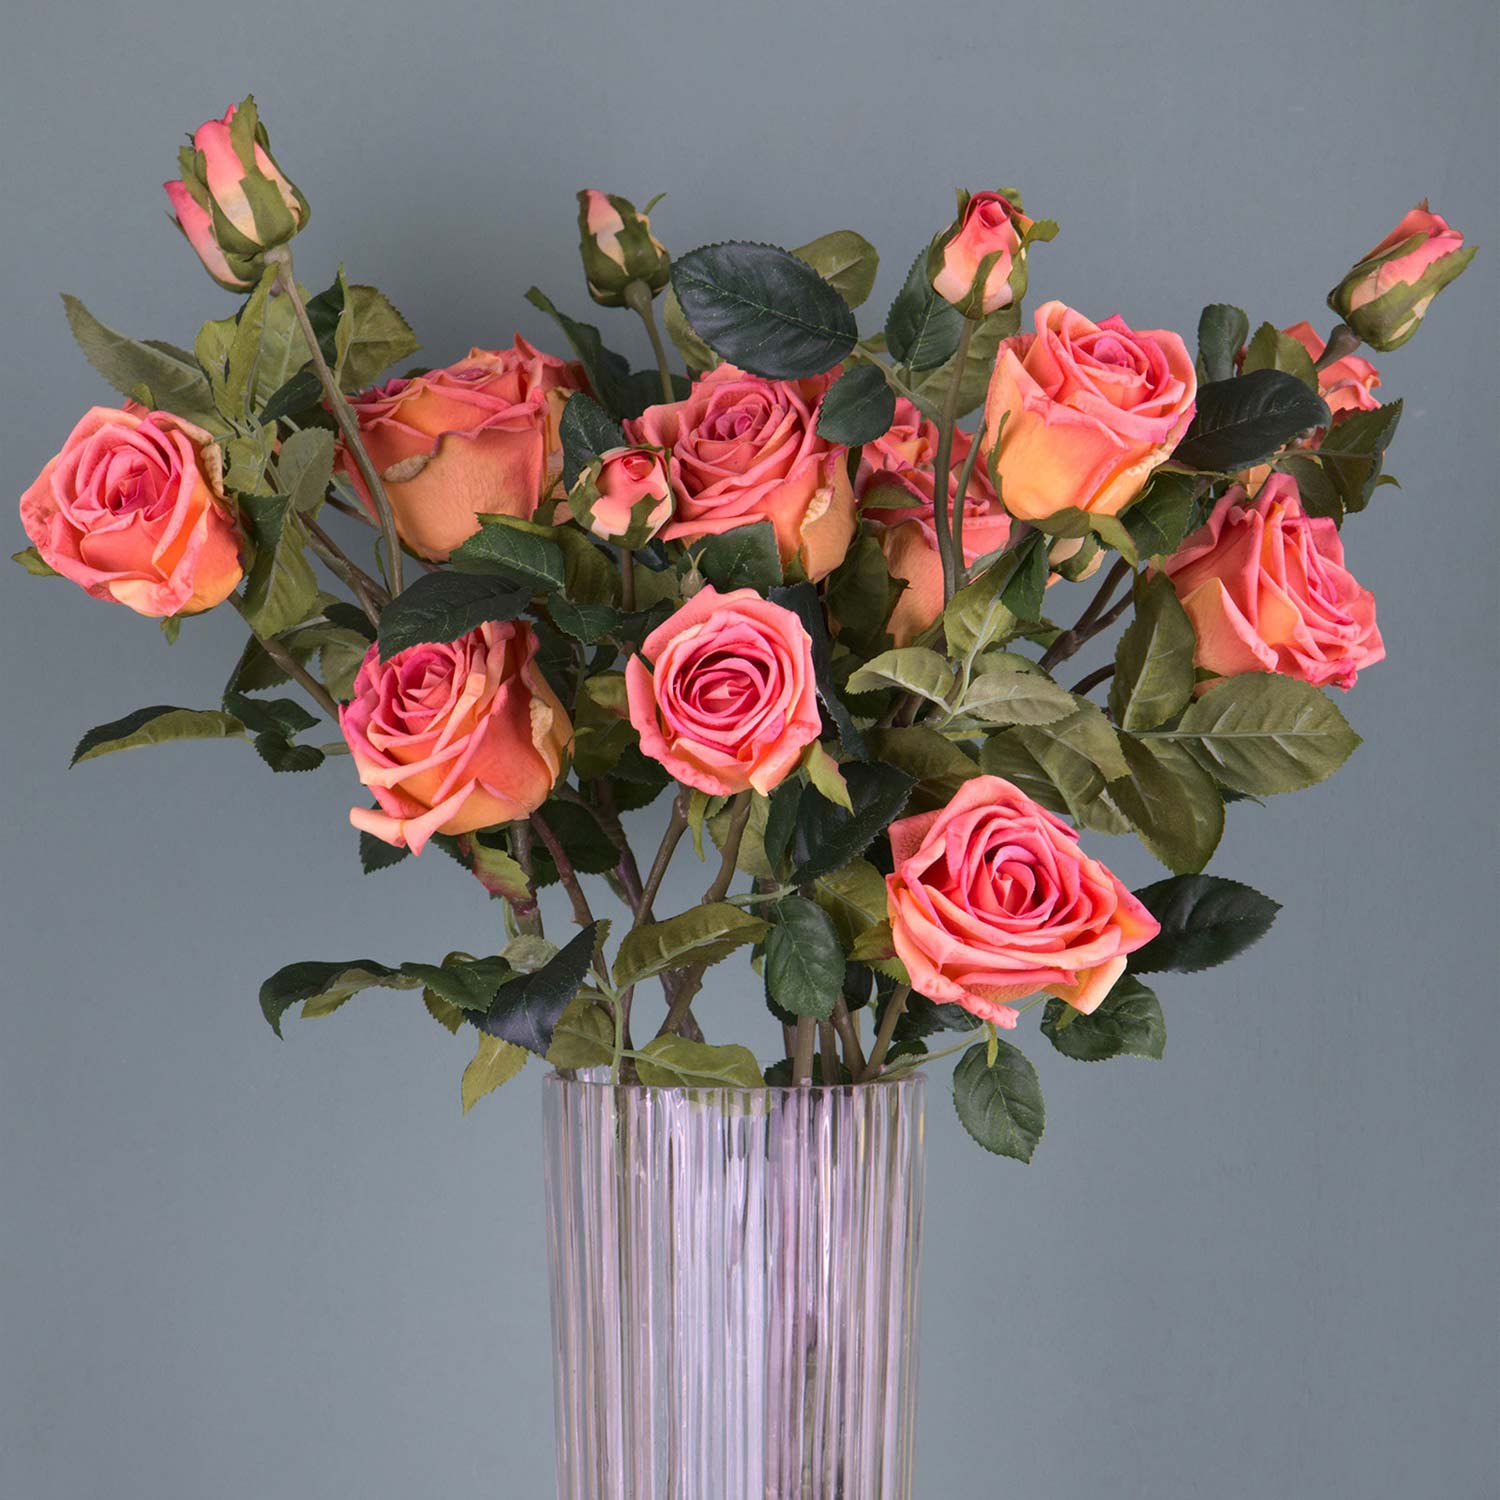 Rózsa művirág, narancsos pink színárnyalatú nyílt és bimbós virágfejekkel.